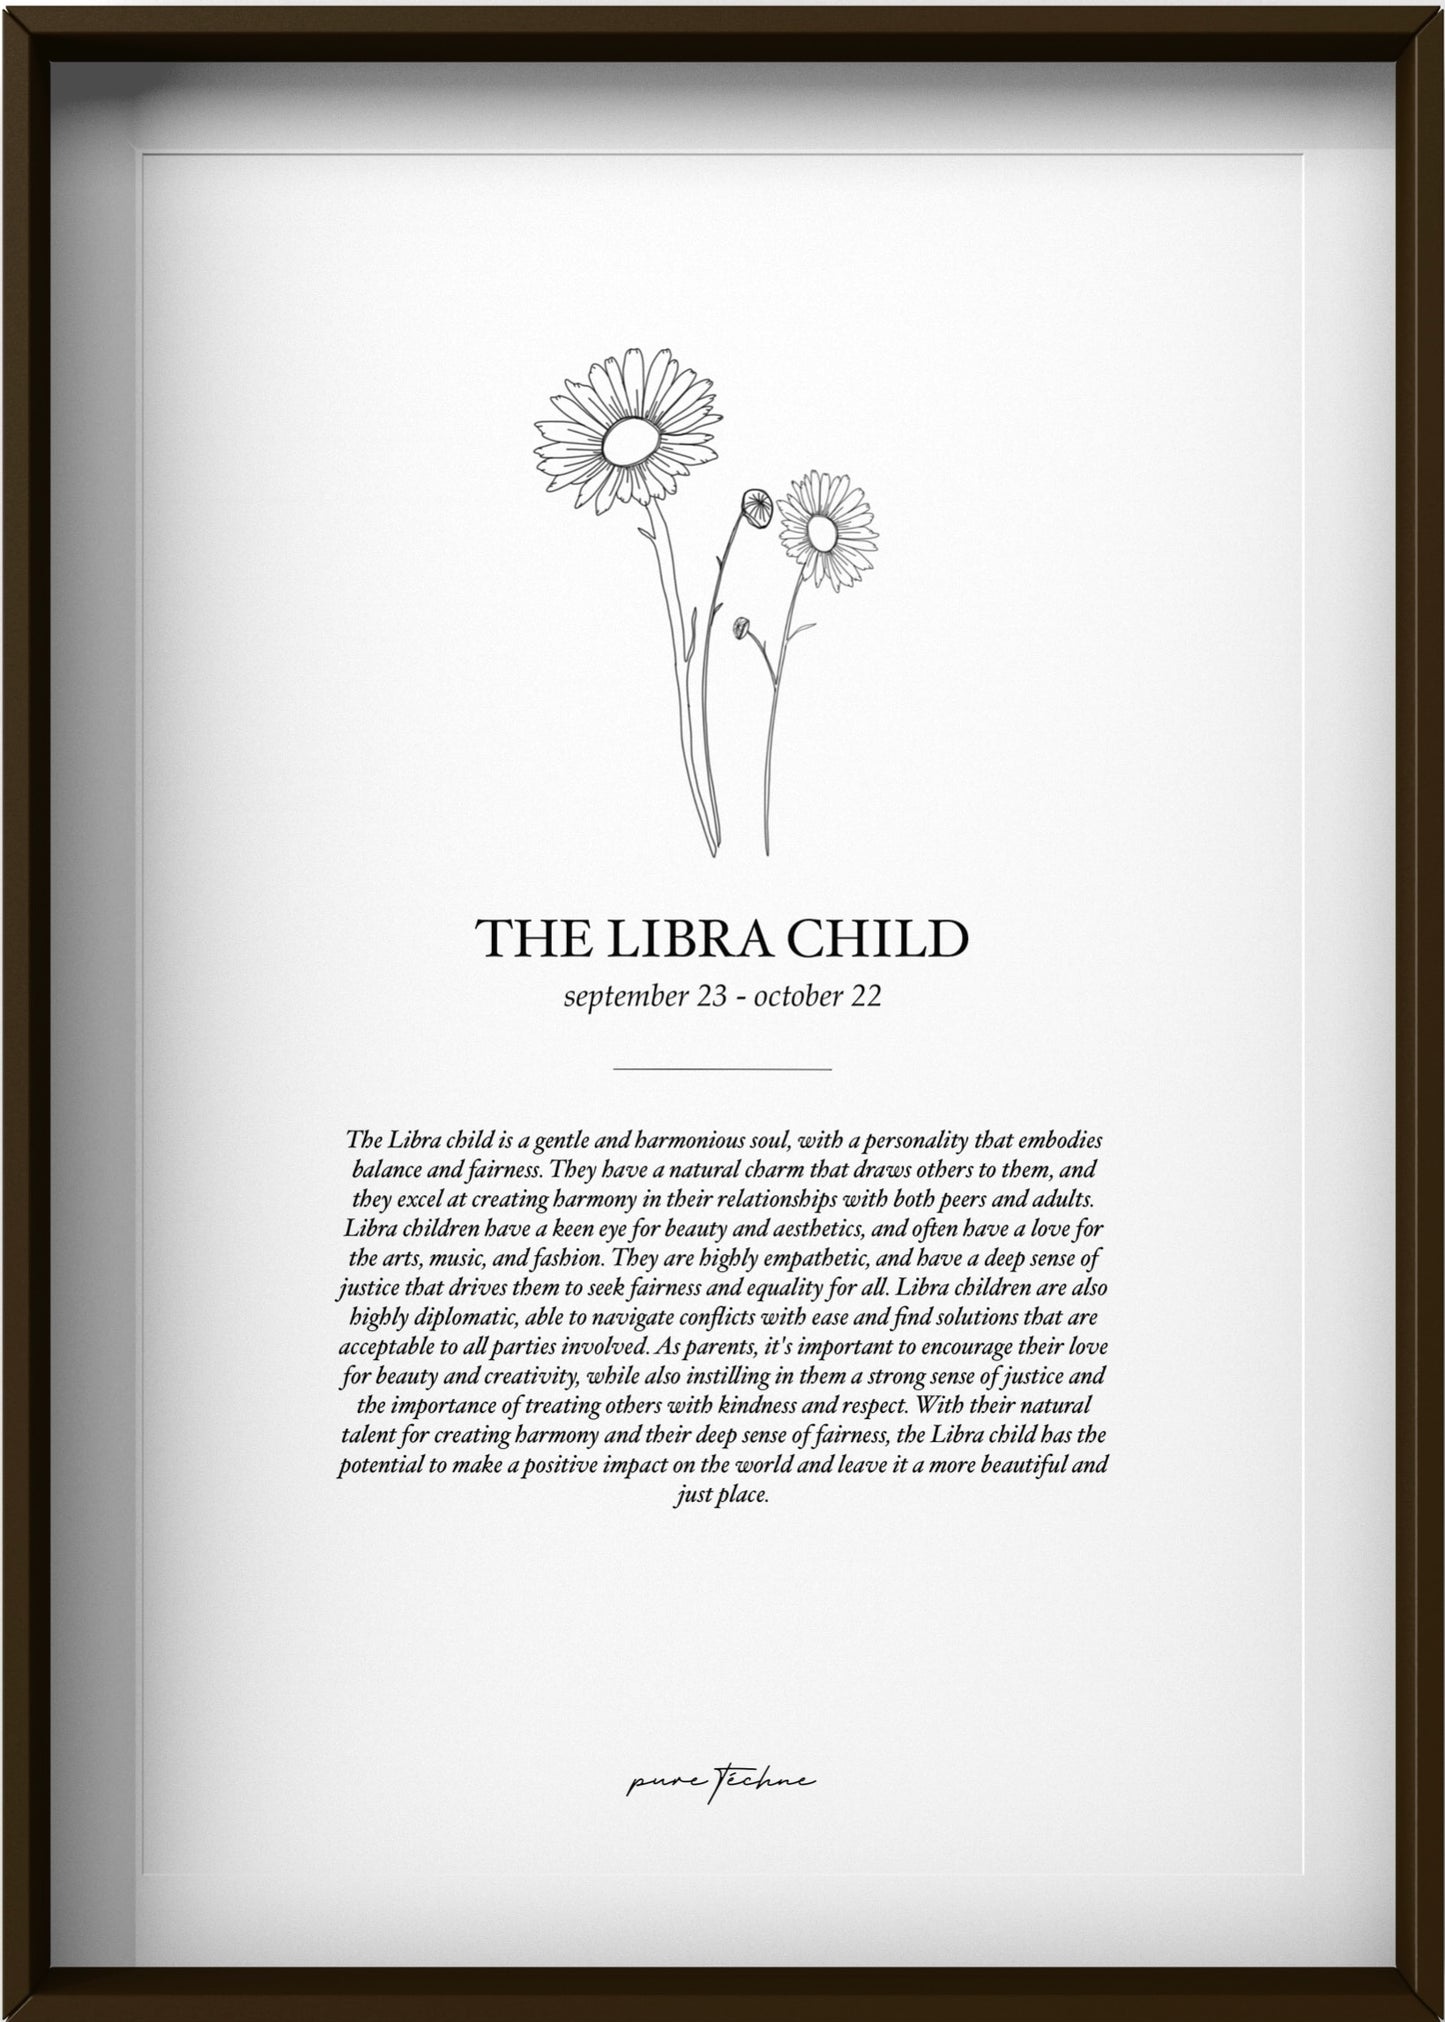 The Libra Child